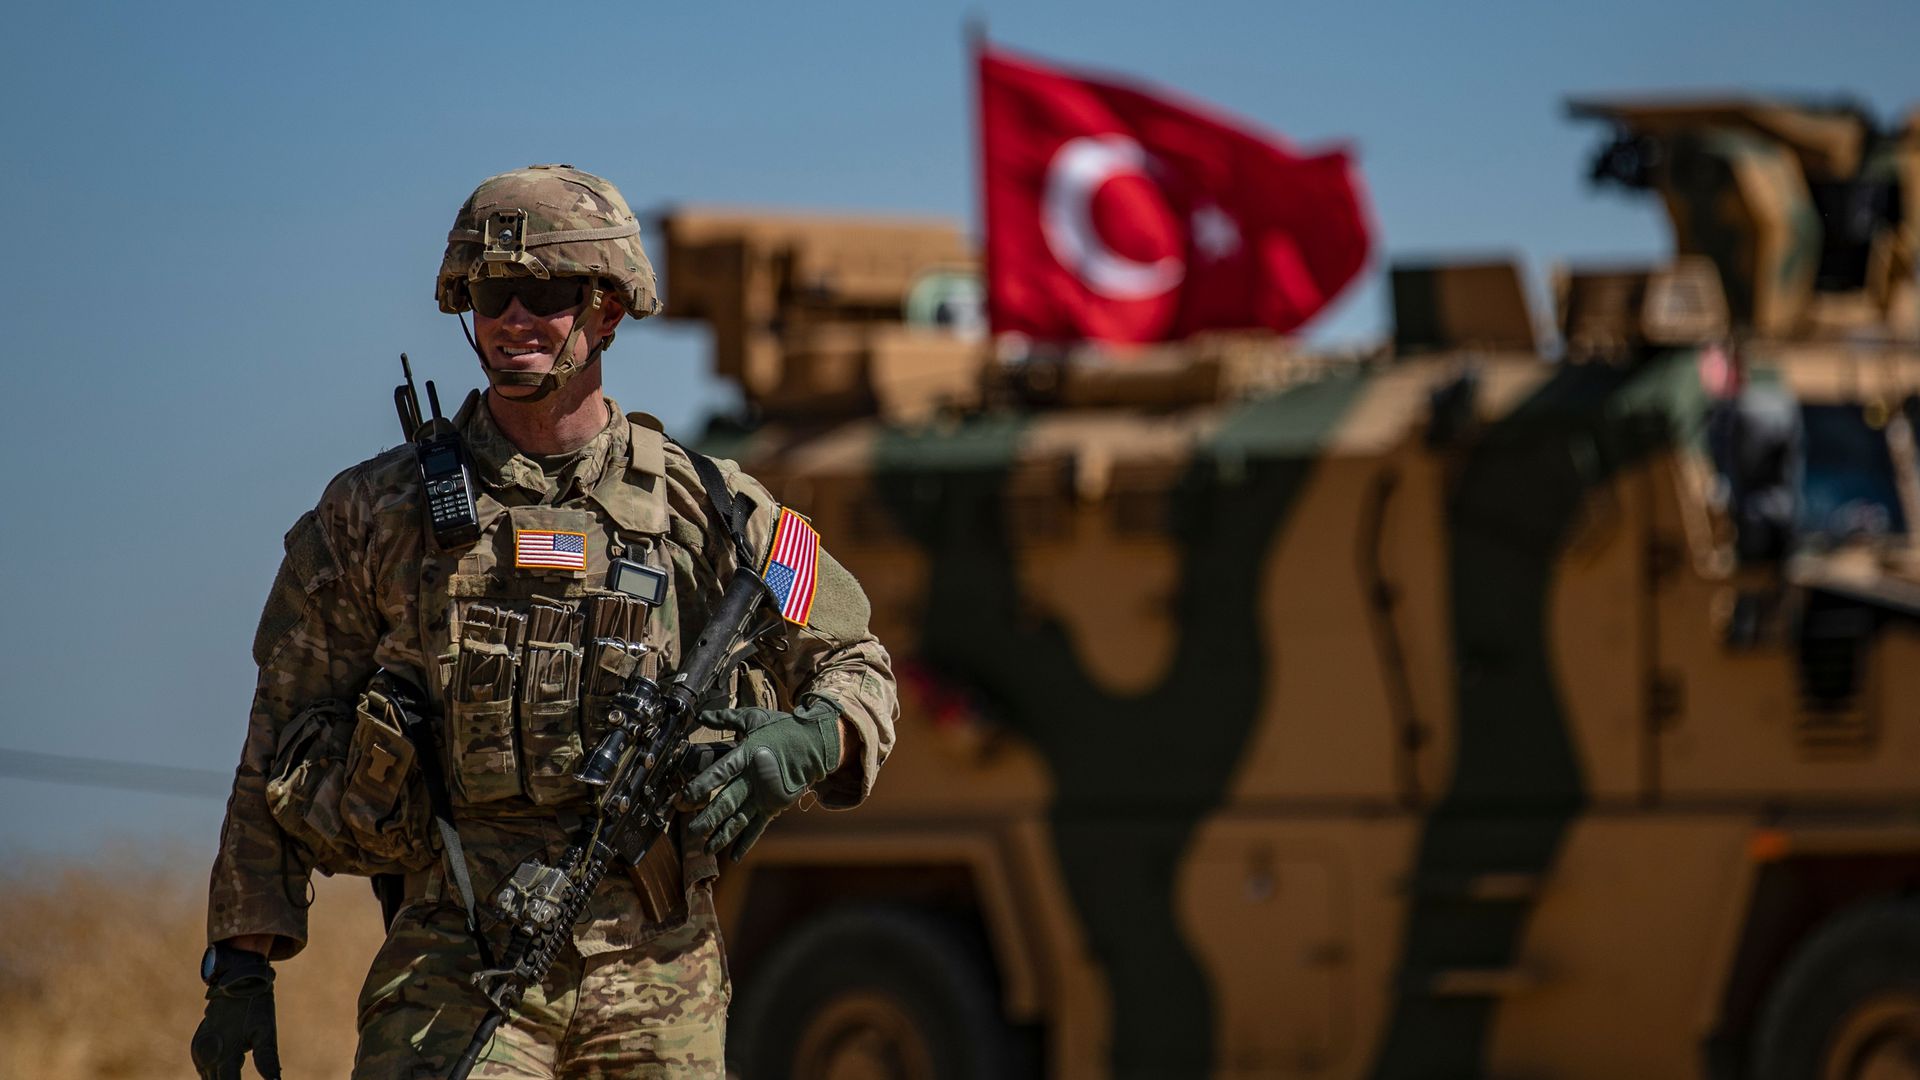 Τεράστια συμφωνία Τουρκίας με ΗΠΑ: Ο Τ.Μπάιντεν παραδίδει το Αφγανιστάν στην Άγκυρα! (βίντεο)